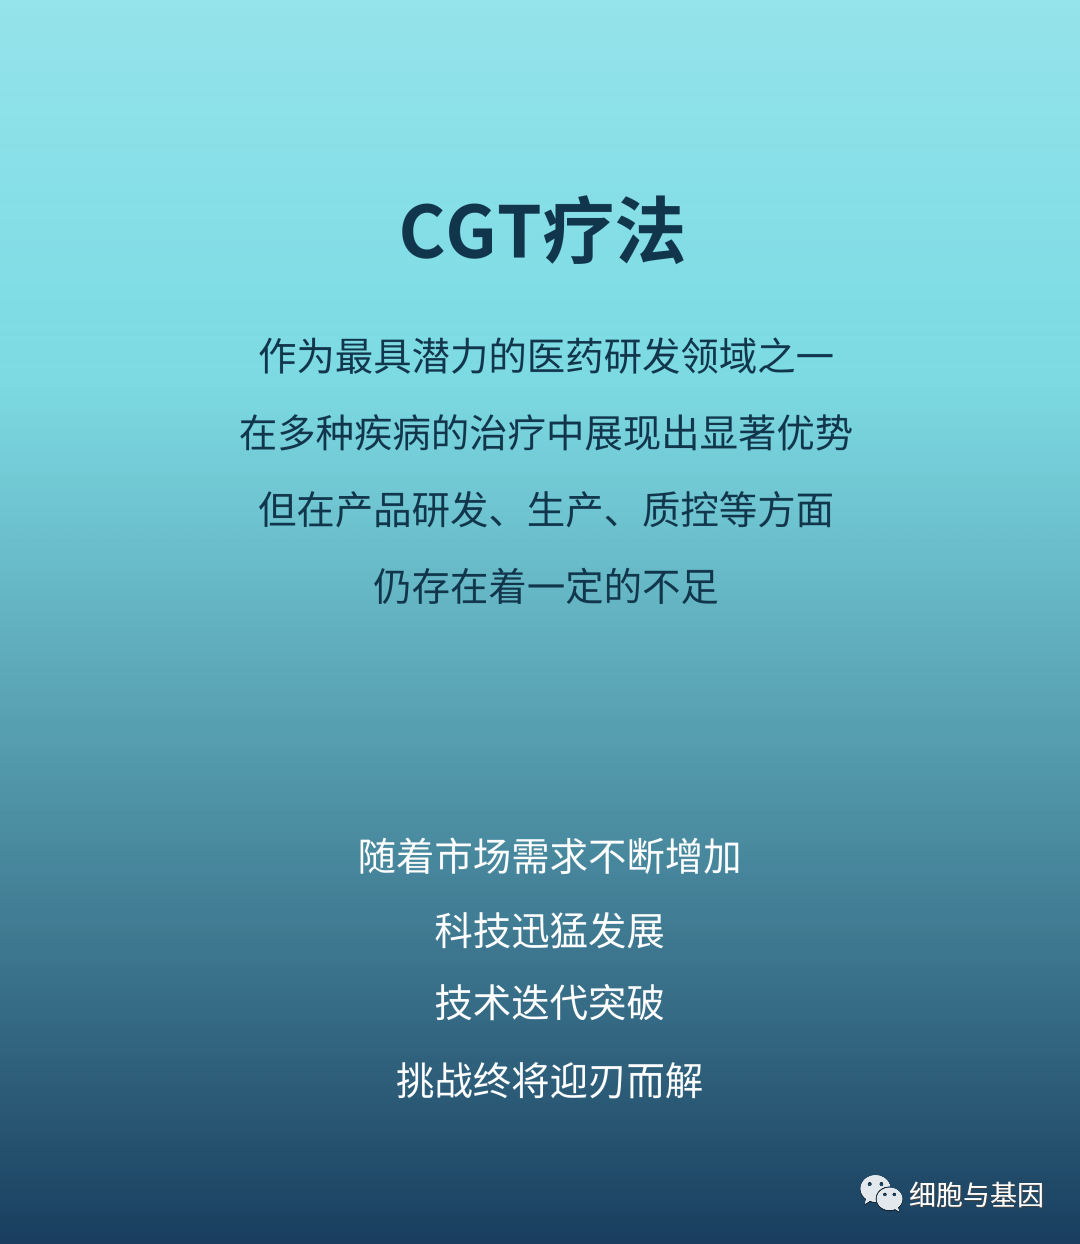 CGT研发全景图解